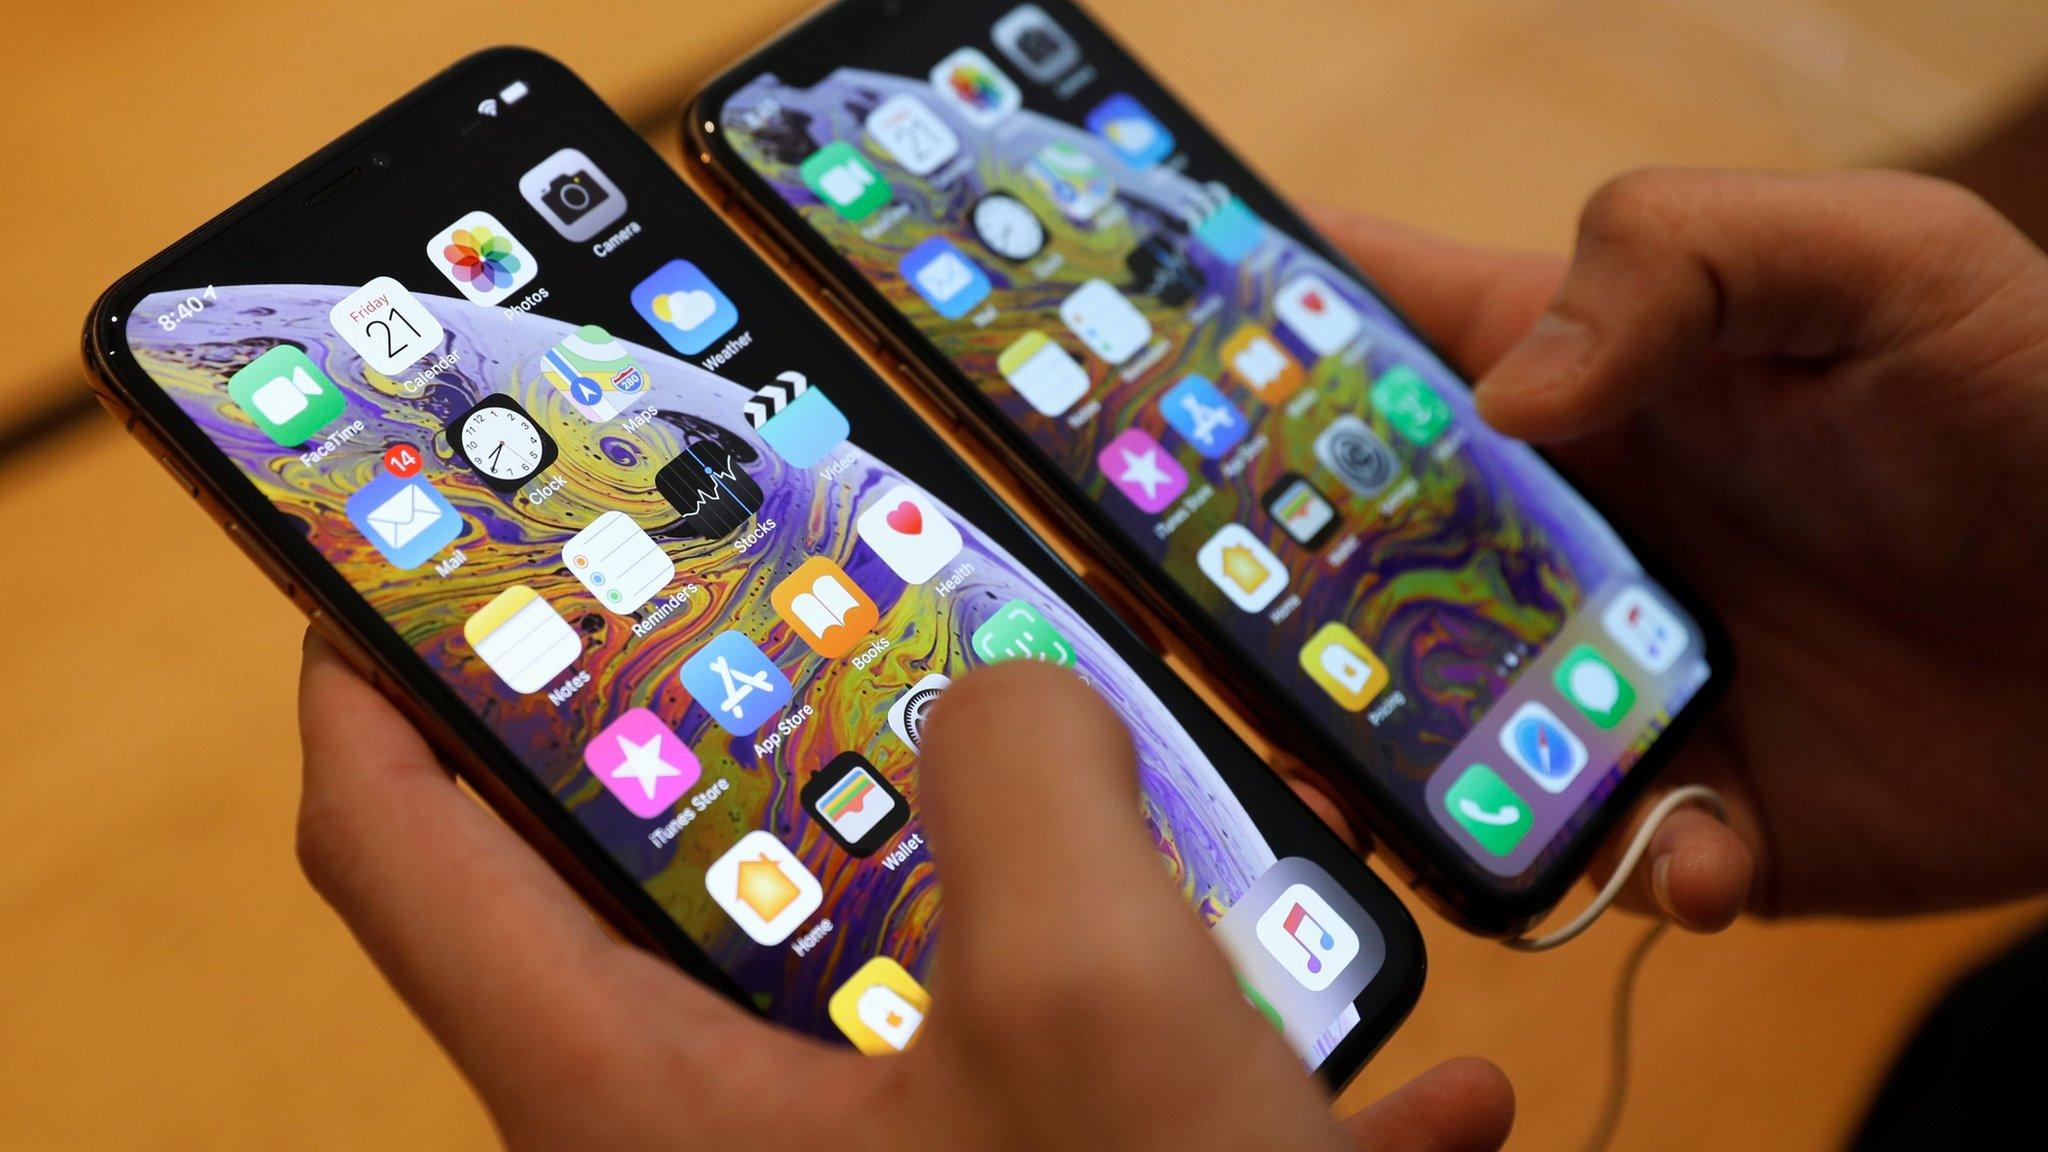 Chargegate: Apple guarda silencio ante problemas de recarga de sus nuevos iPhones